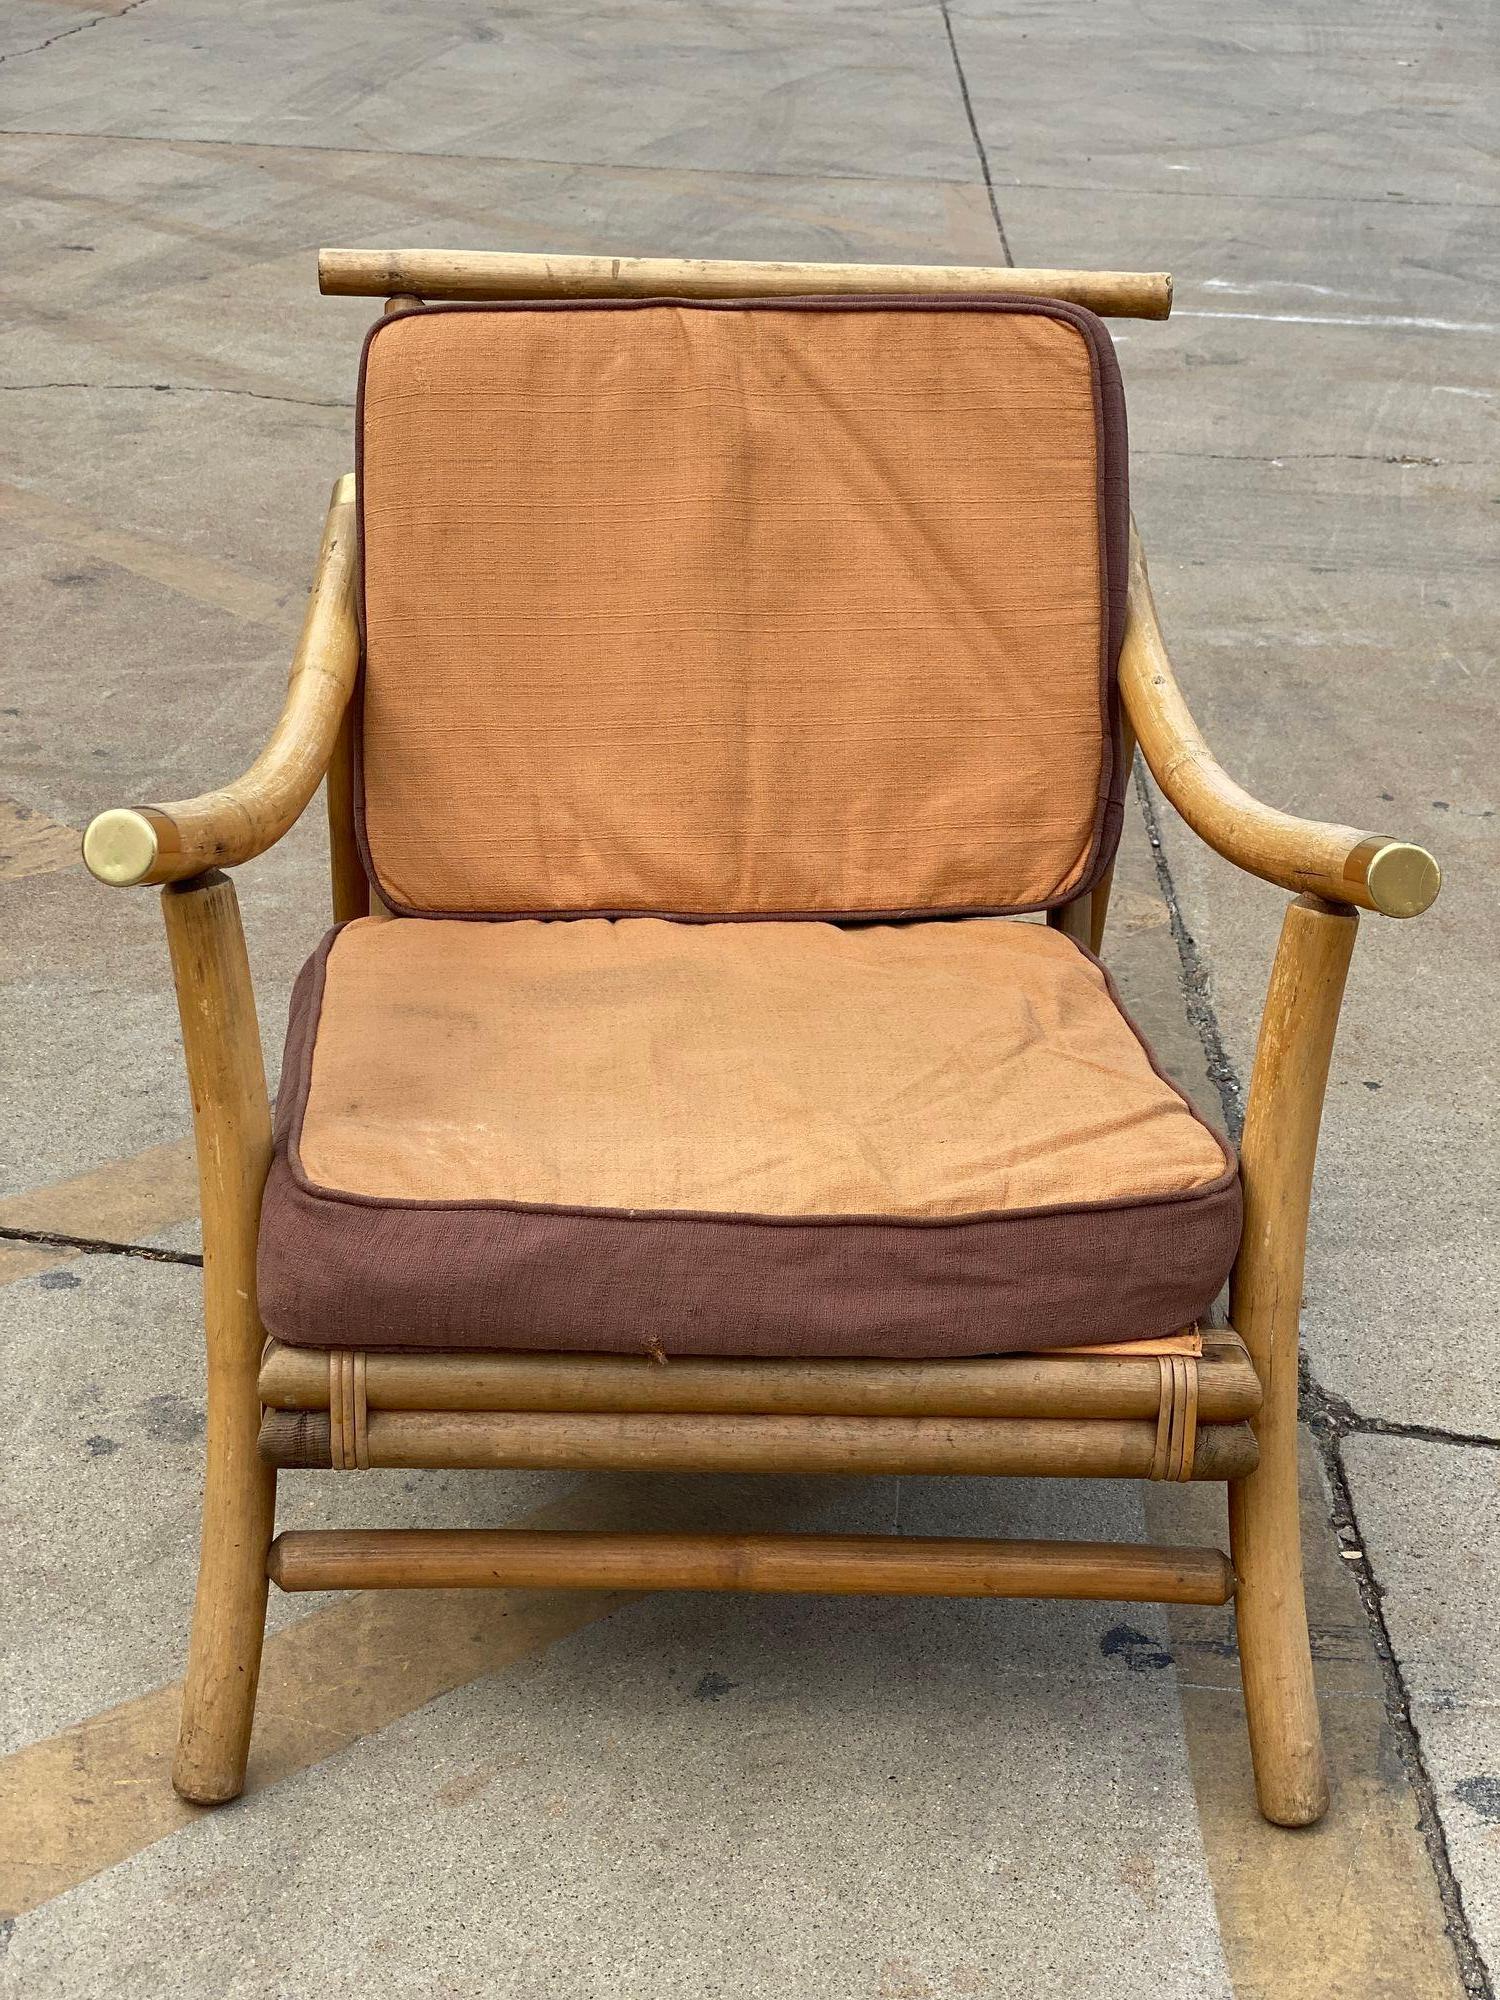 Restored Rattan Sofa & Chair Livingroom Set by John Wisner for Ficks Reed For Sale 3